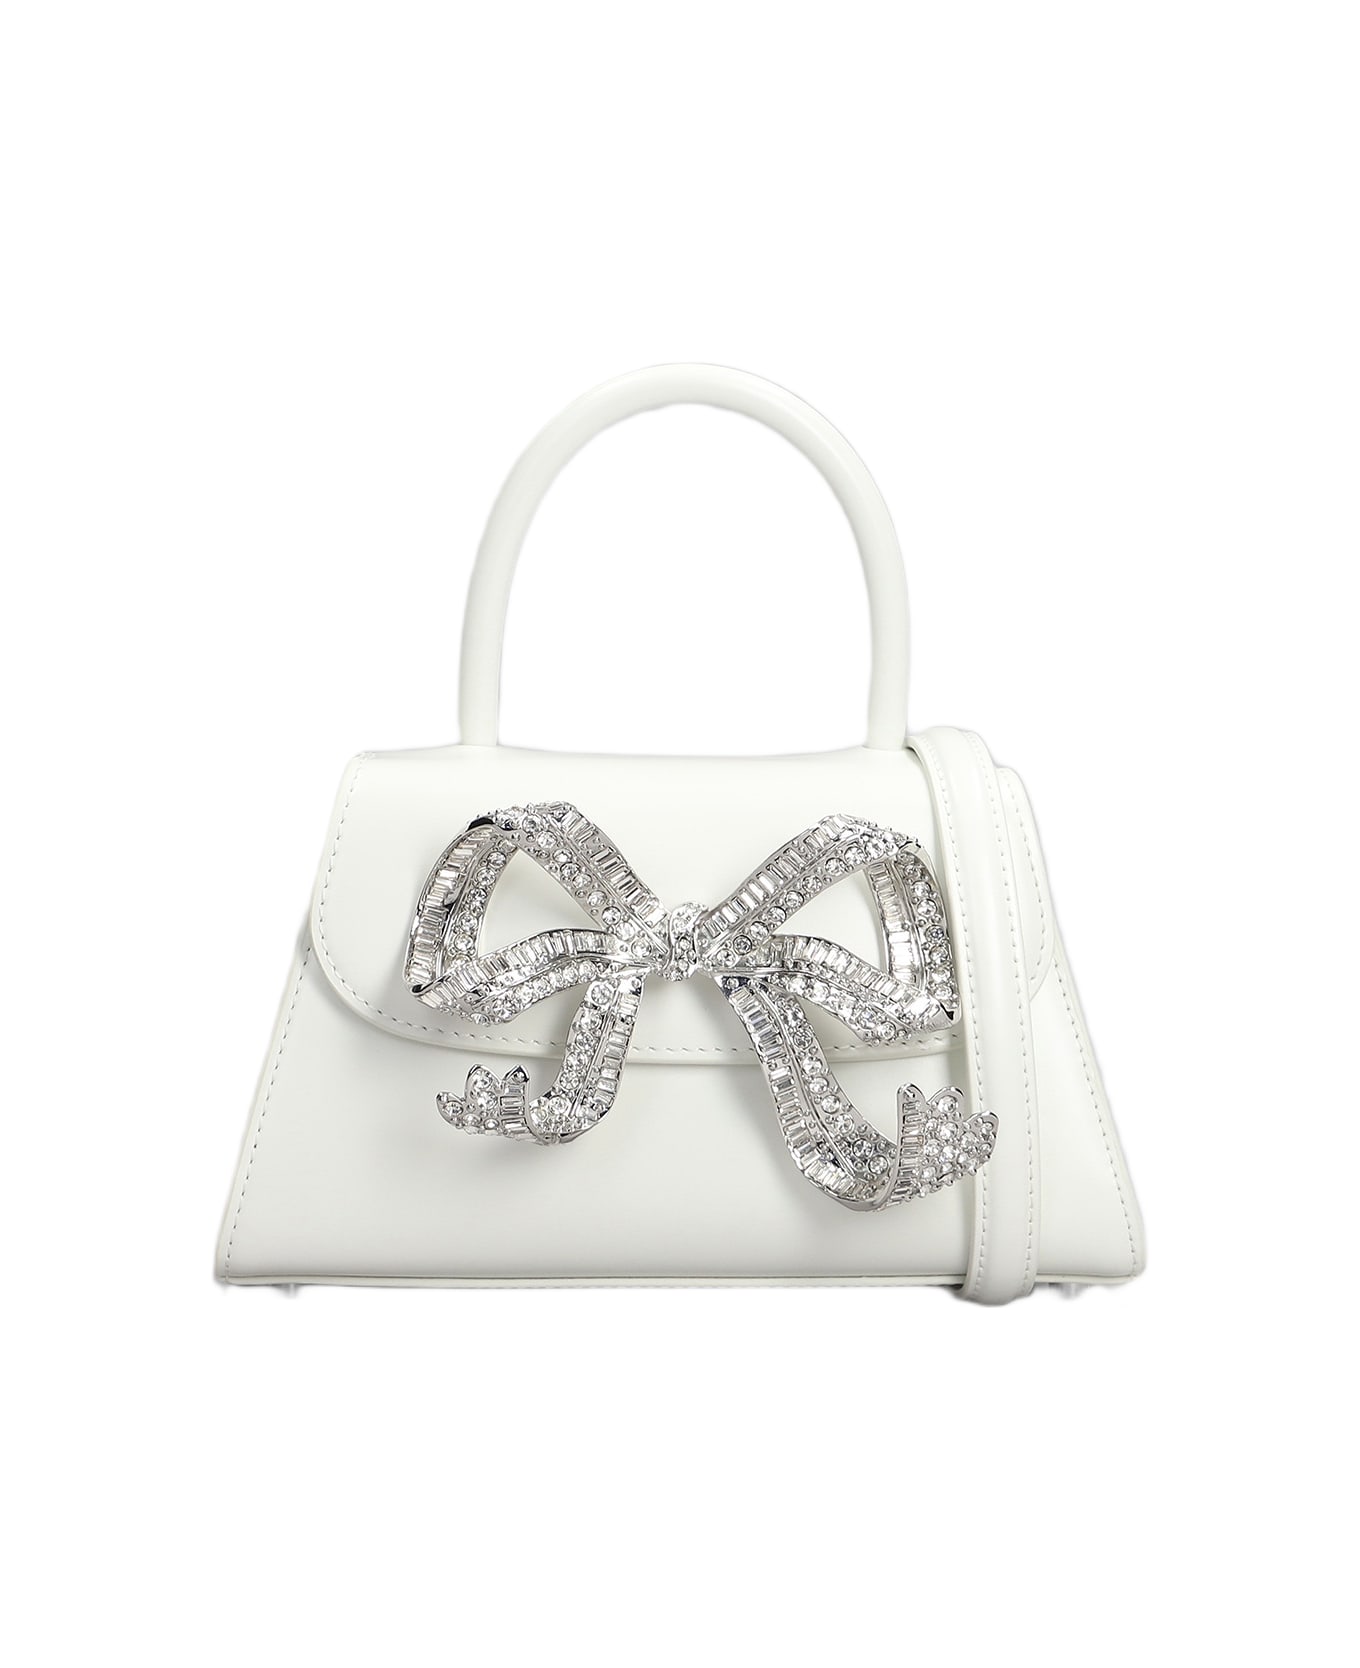 self-portrait Diamante Mini Hand Bag In White Leather - white